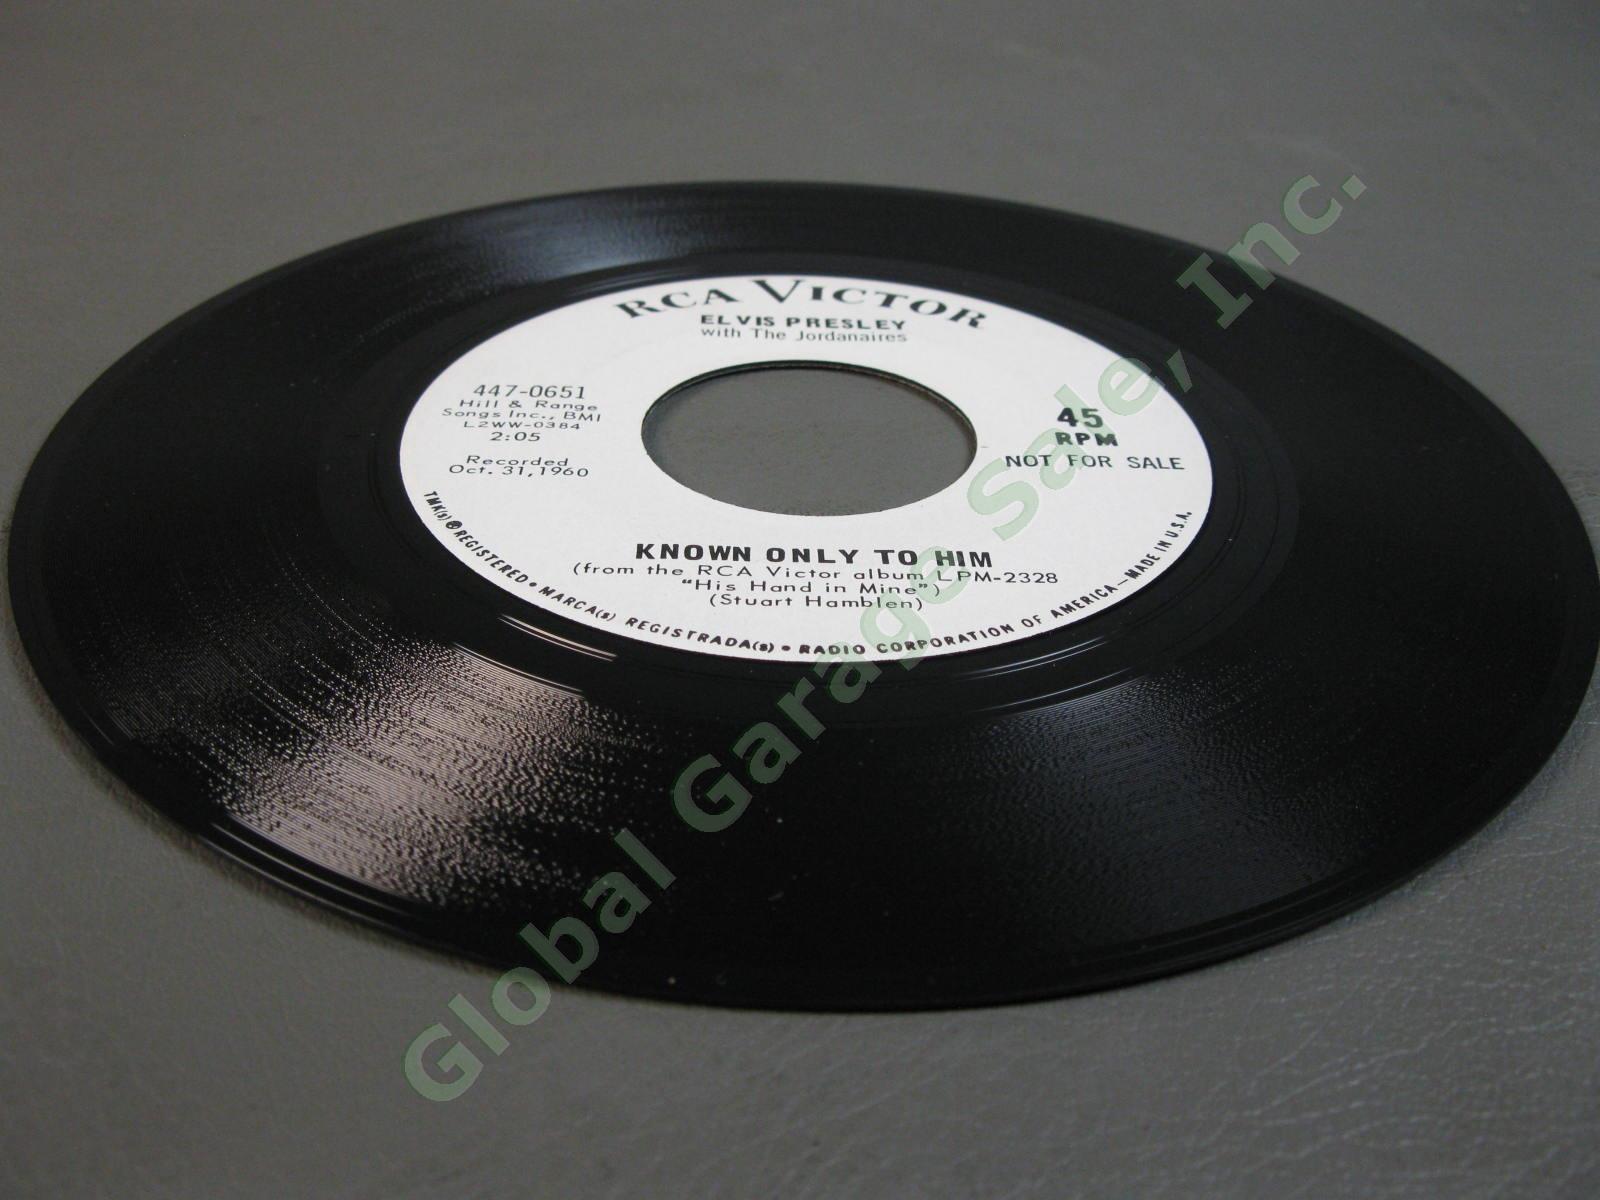 Elvis Presley 45RPM 7" White Label PROMO Record Joshua Fit The Battle 447-0651 7